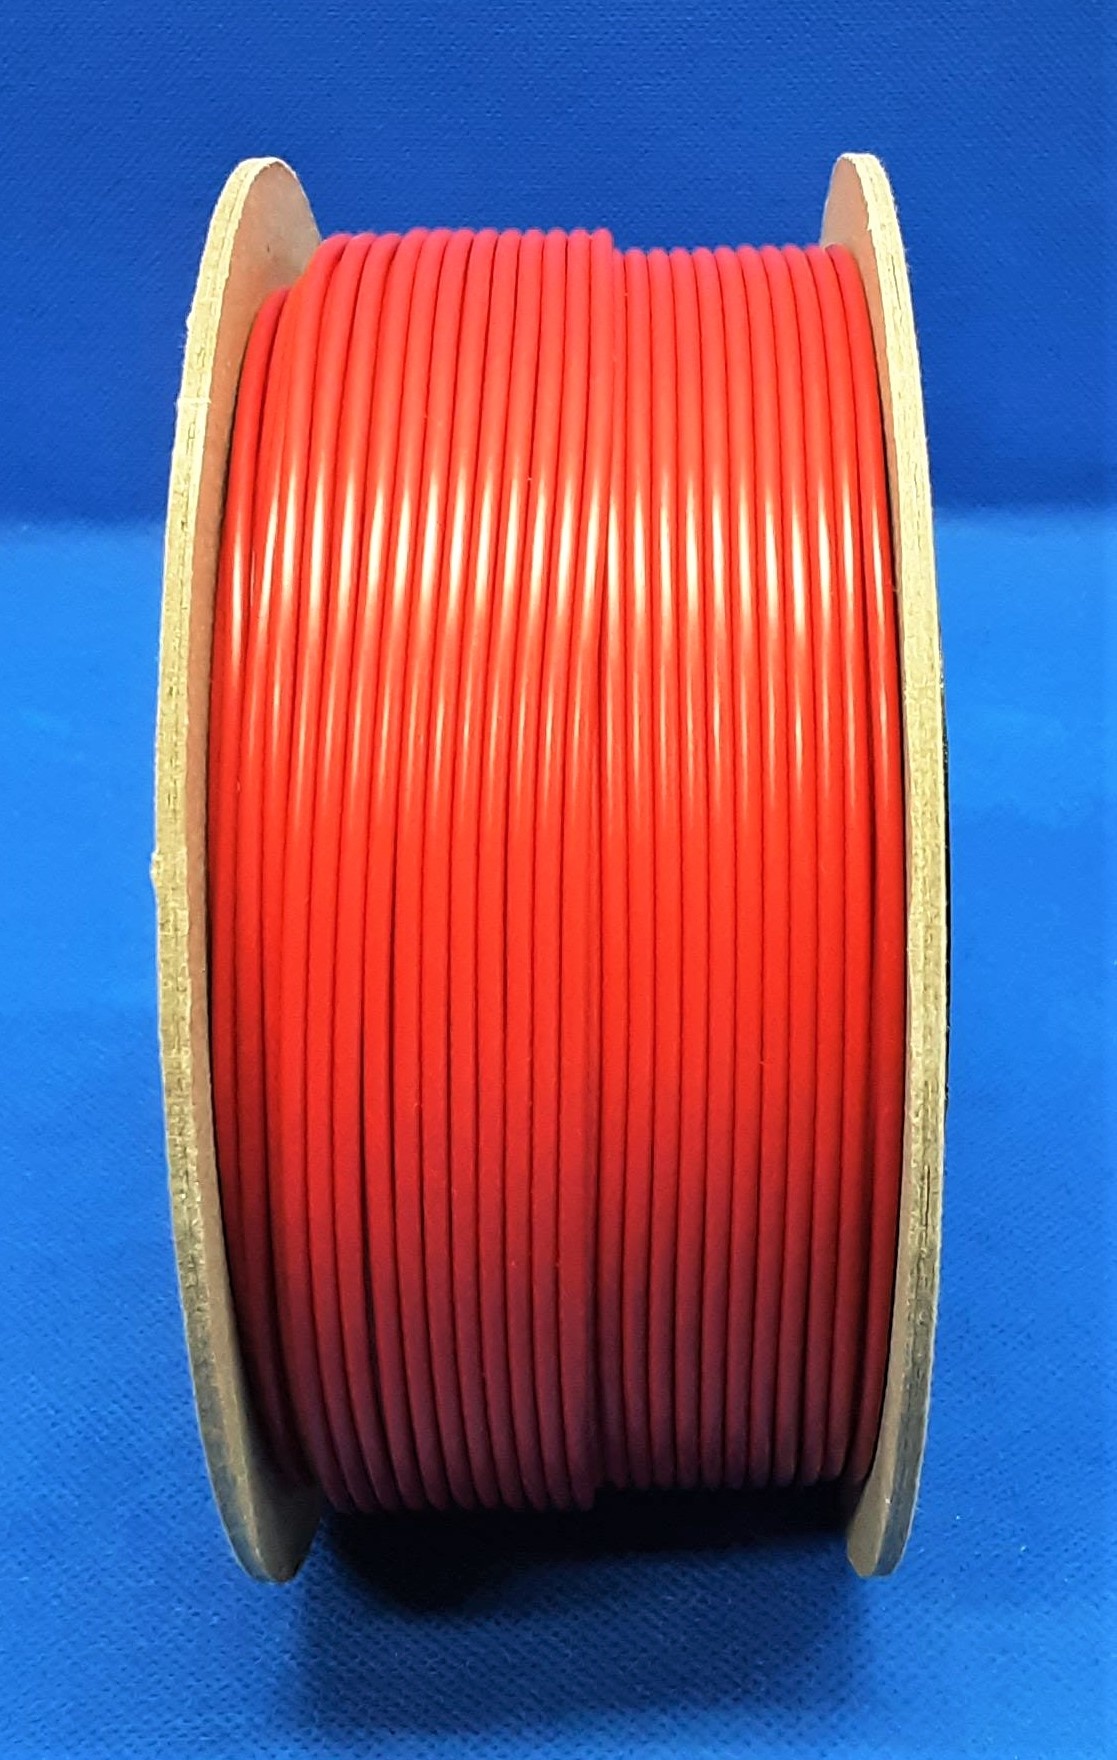 FLRY-B kabel 1,5mm - voertuigkabel - 100 meter op rol - Kleur